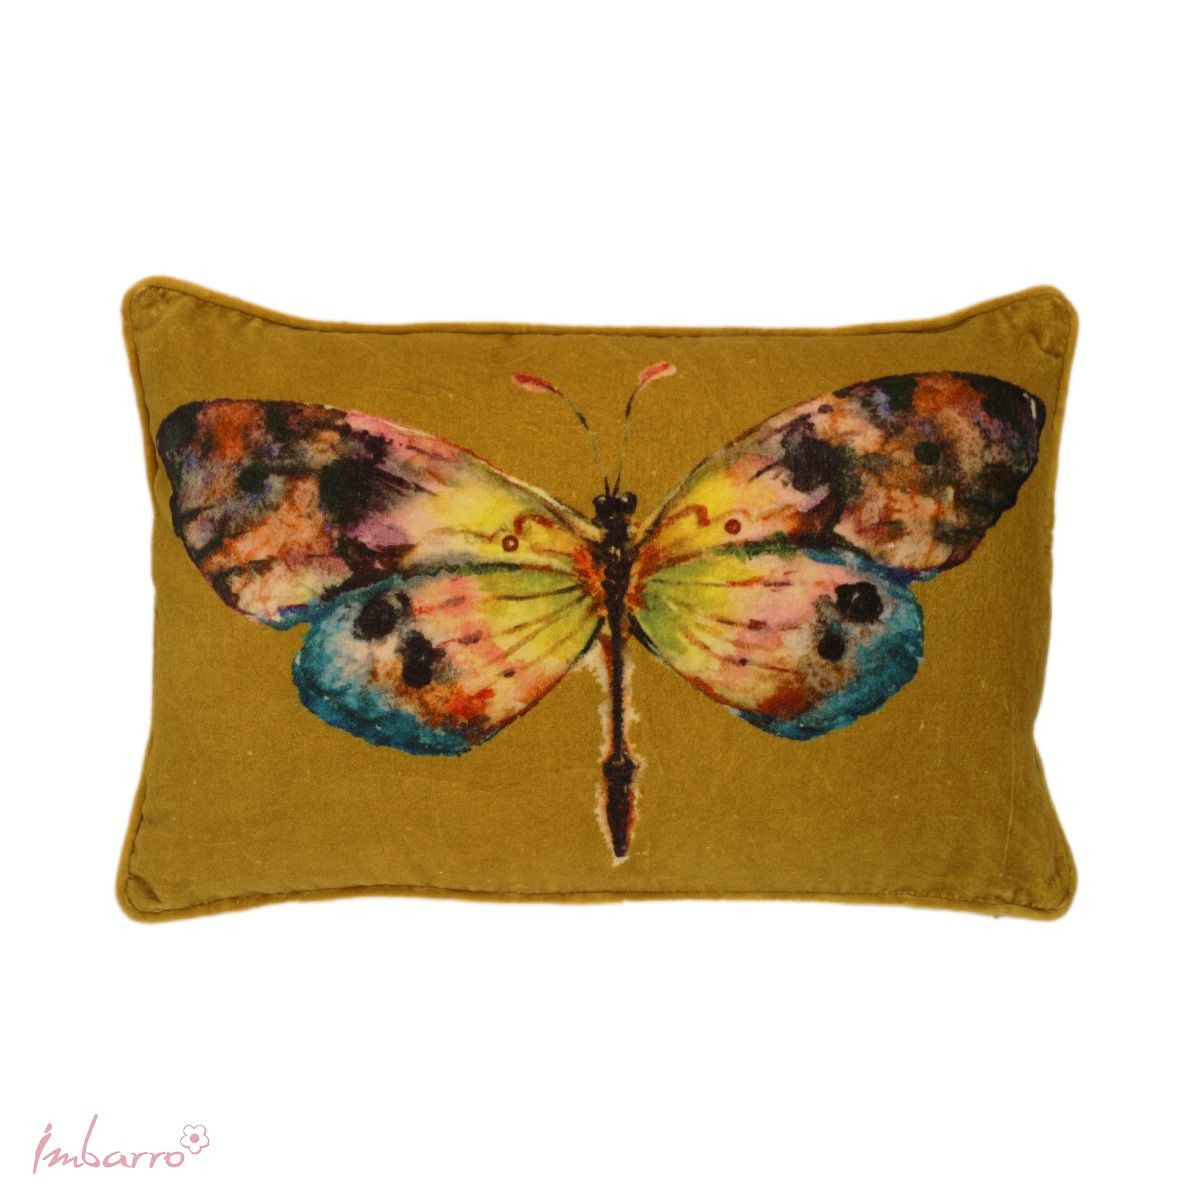 Imbarro - Sierkussen 'Butterfly' (40cm x 60cm)